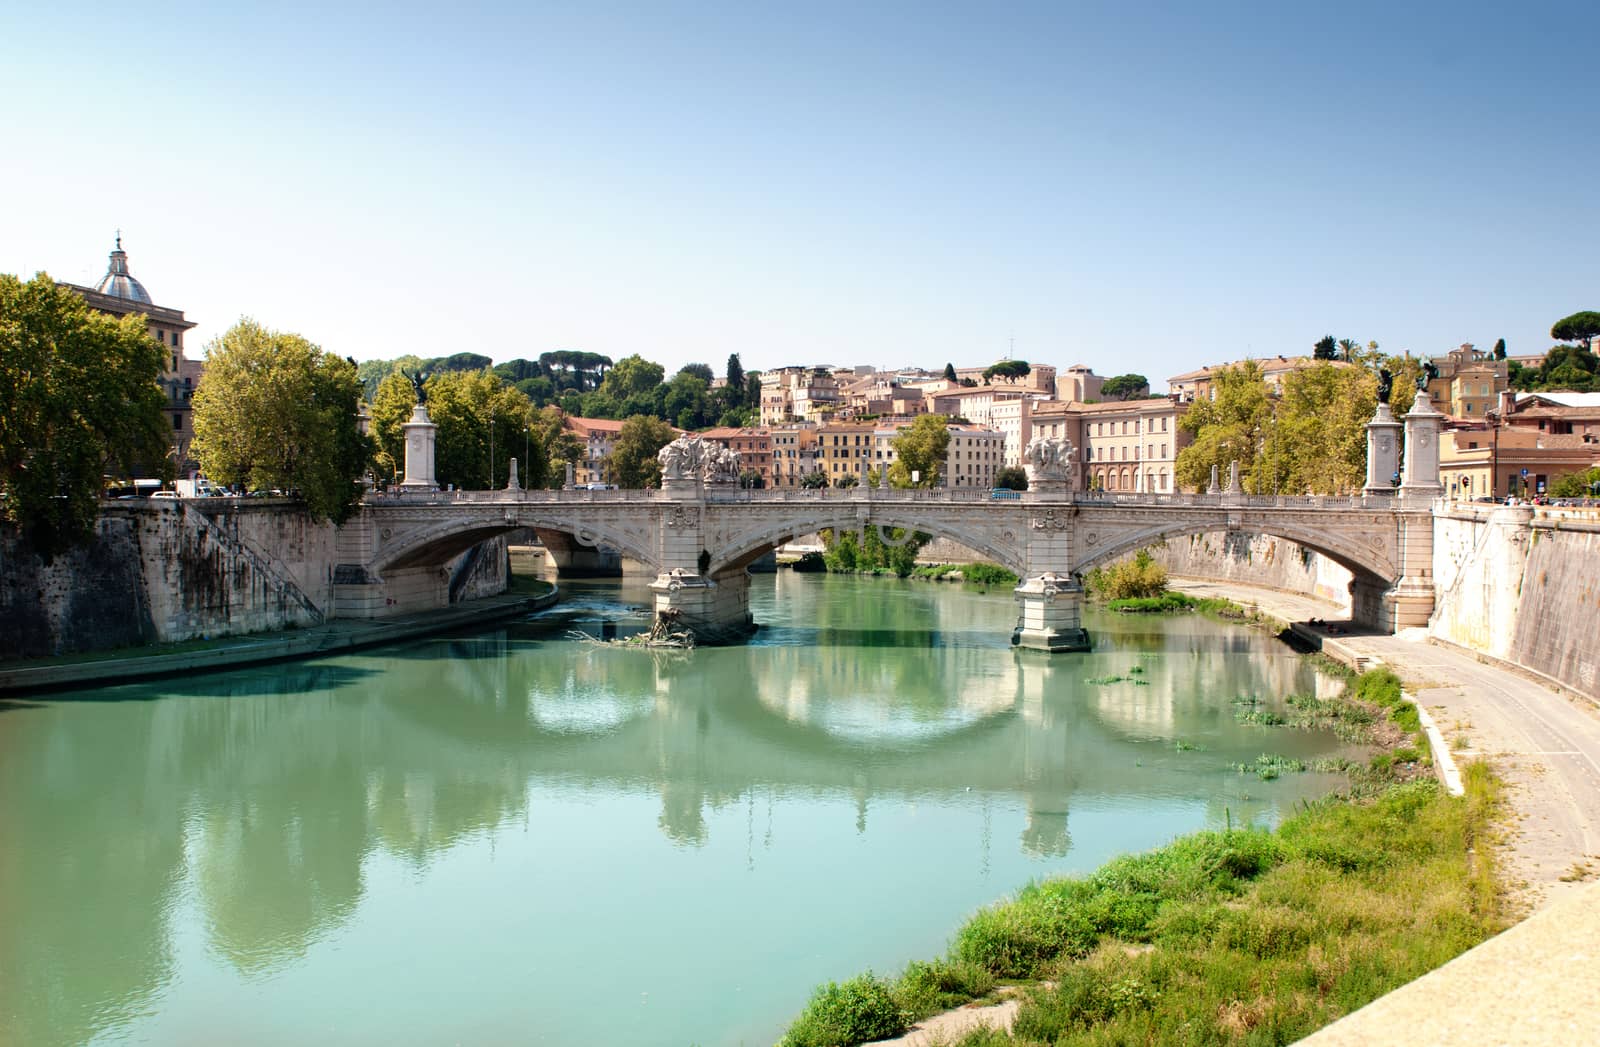 Ancient bridge in Verona, Italy